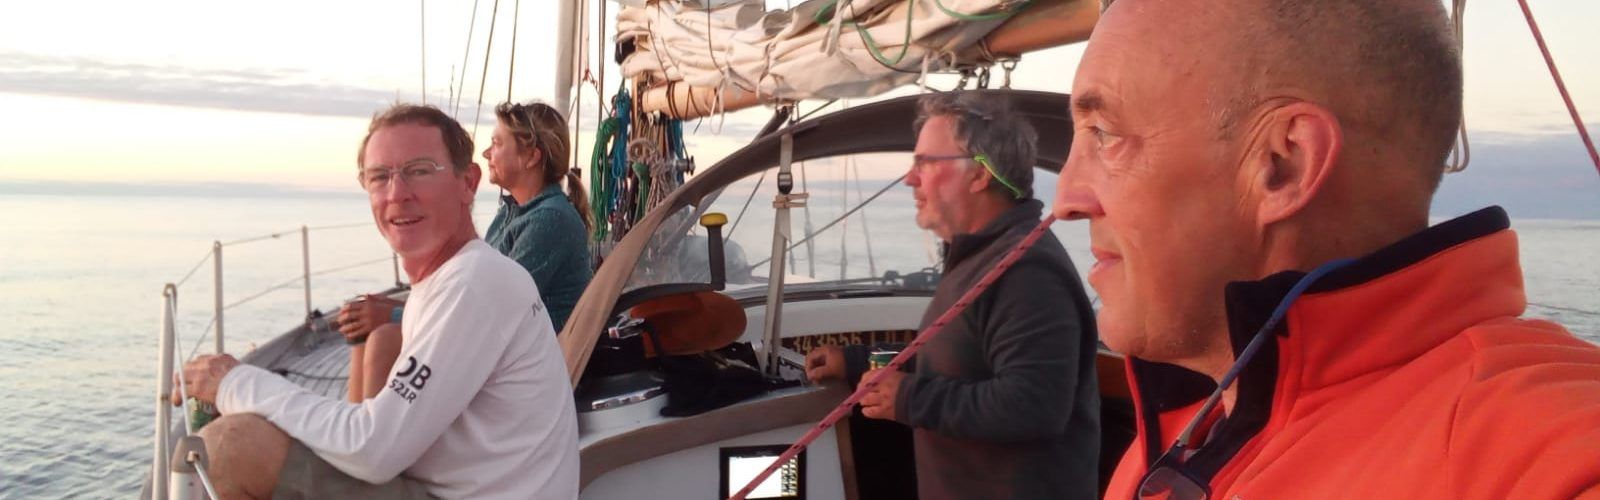 Relato de una nueva travesía oceánica en vela: De Cabo Verde a las islas Azores (y II)